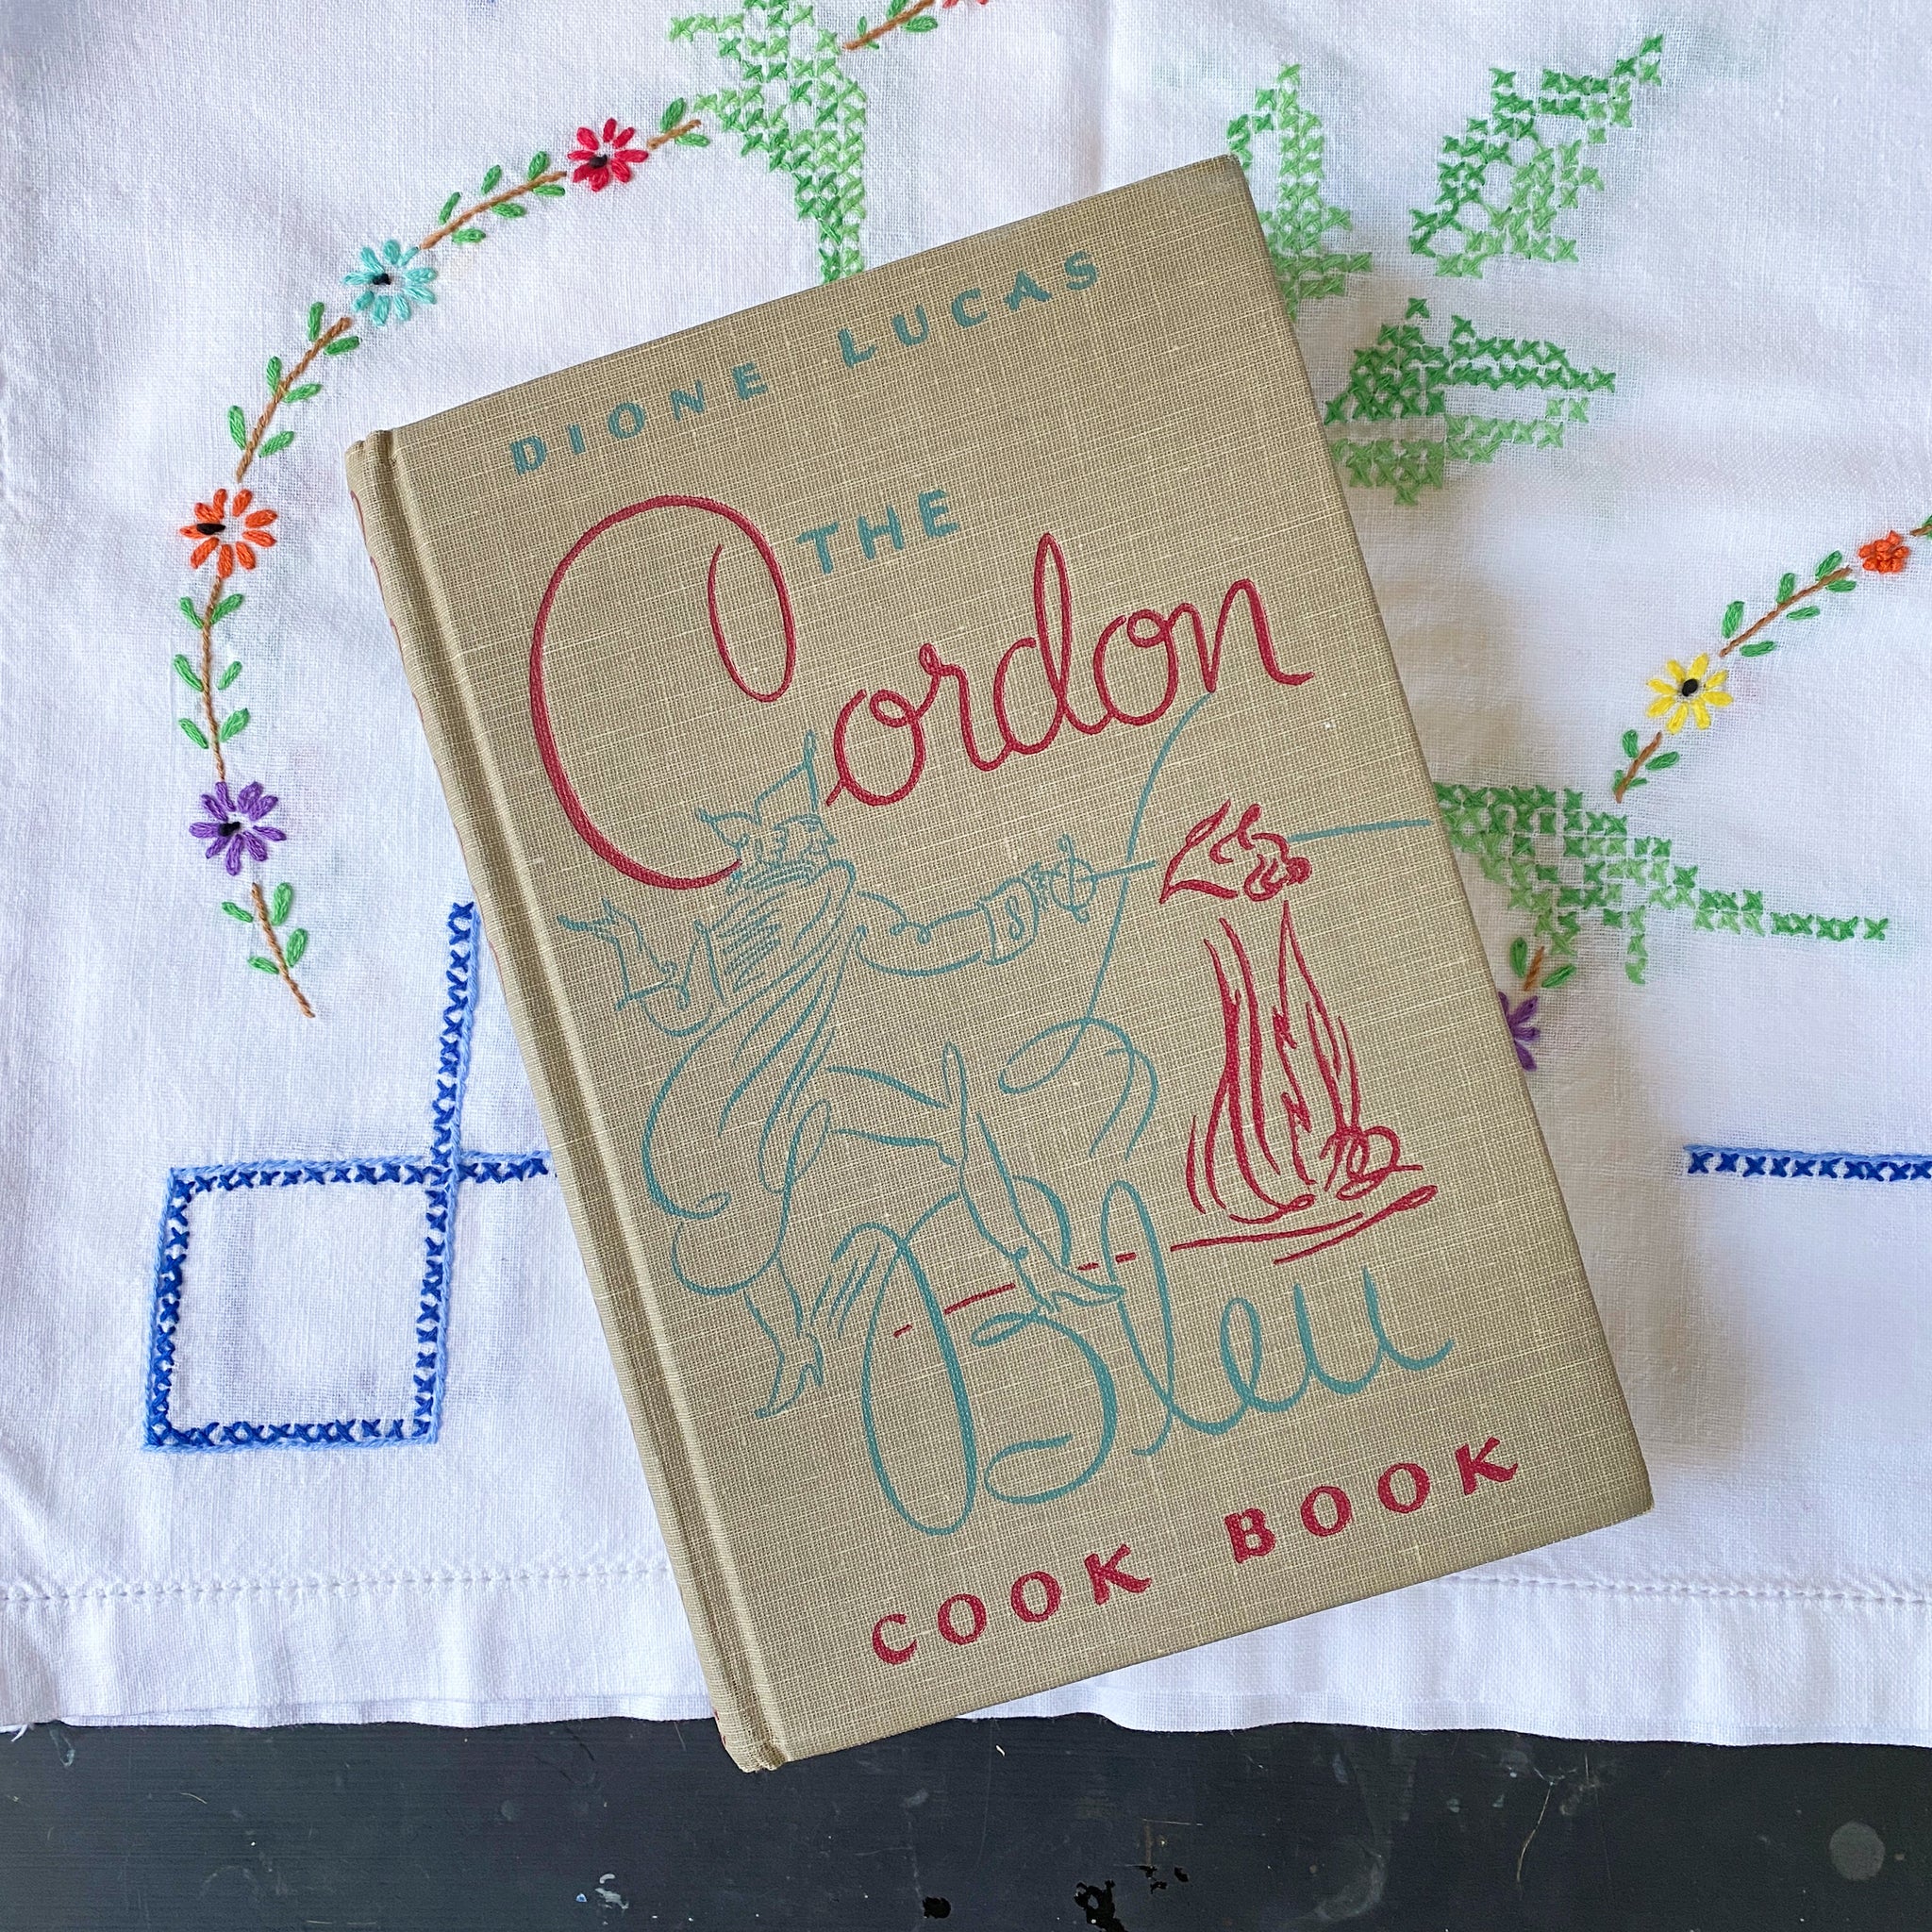 The Cordon Bleu Cook Book - Dione Lucas - 1947 Edition